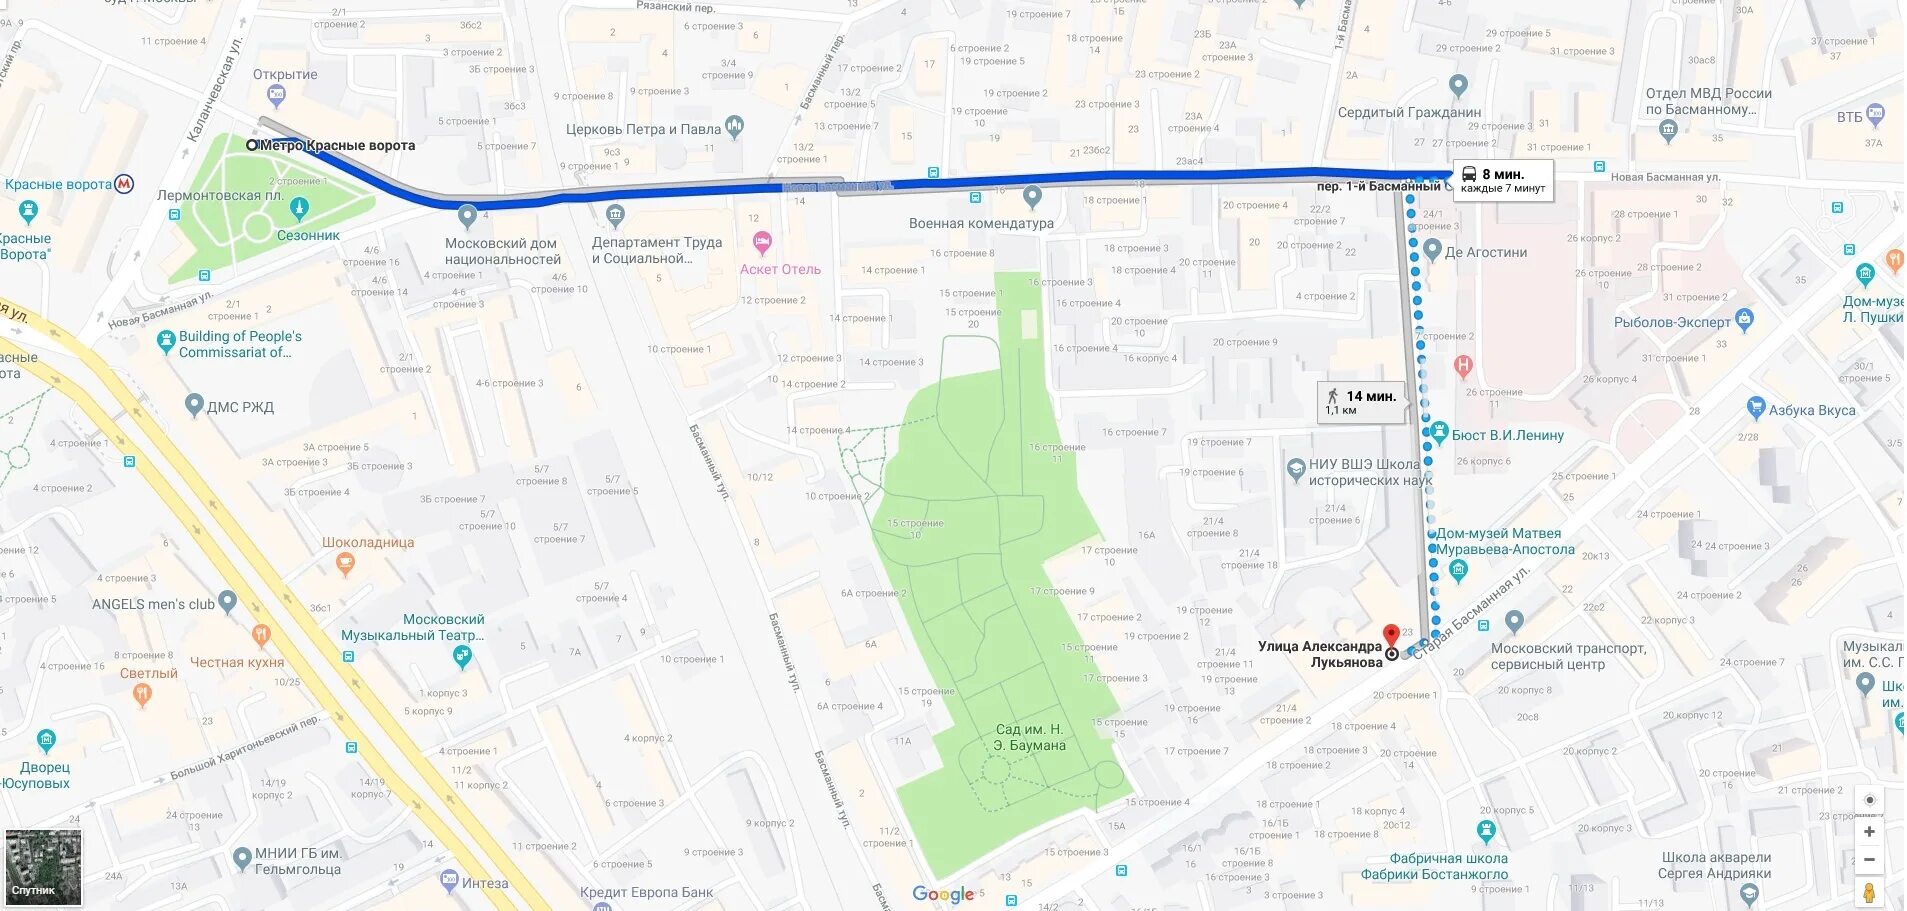 Басманный какое метро. Басманный переулок метро. ВШЭ карта. ВШЭ на карте Москвы. Басманный переулок на карте Москвы.